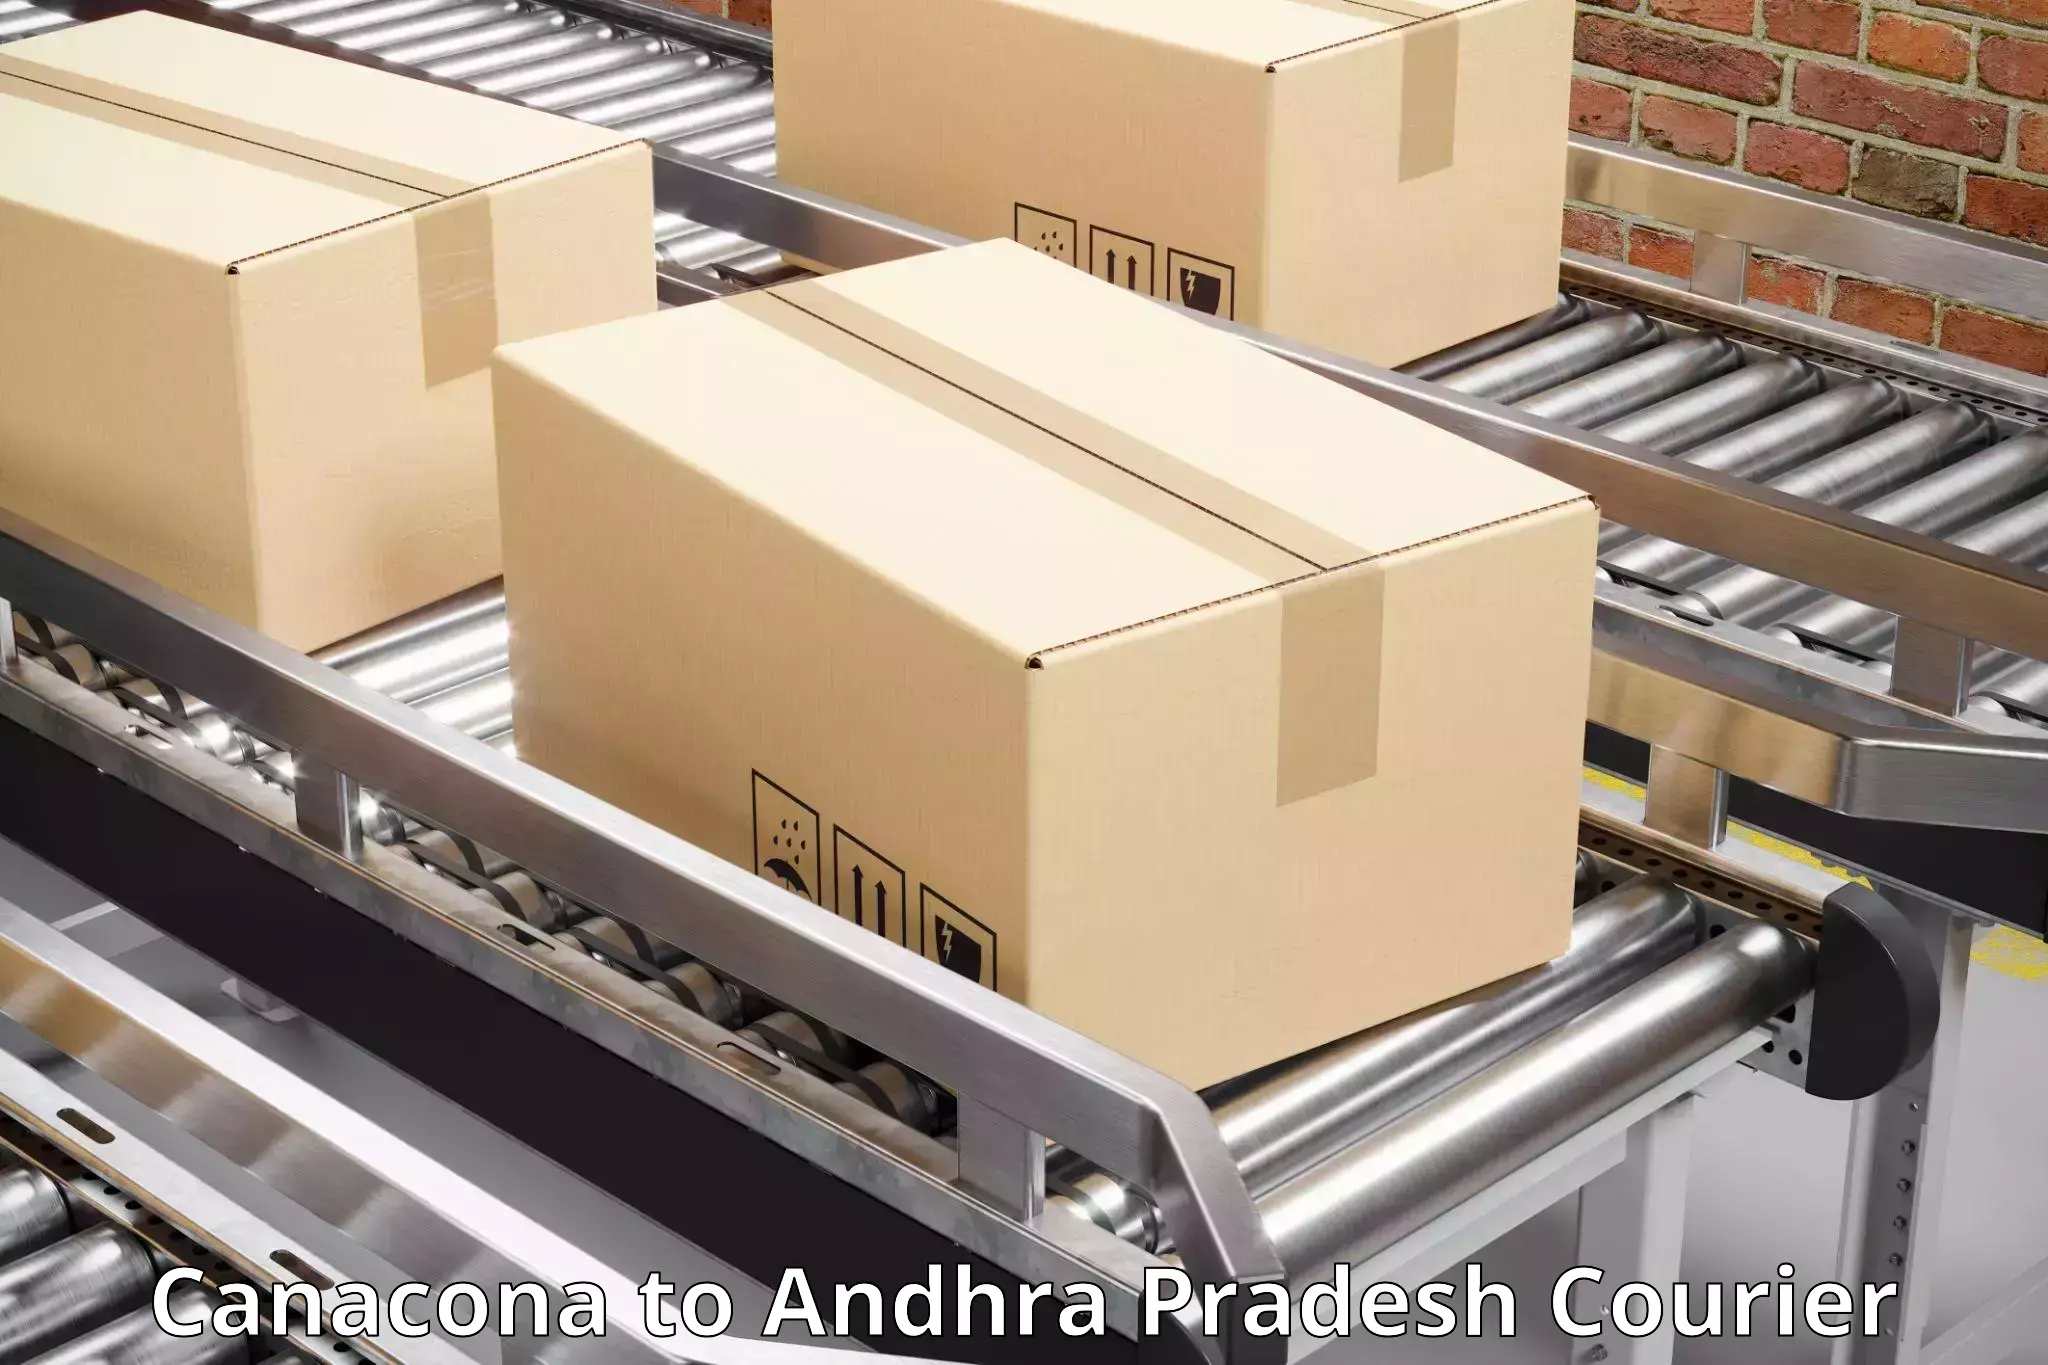 Overnight delivery services Canacona to Ranastalam